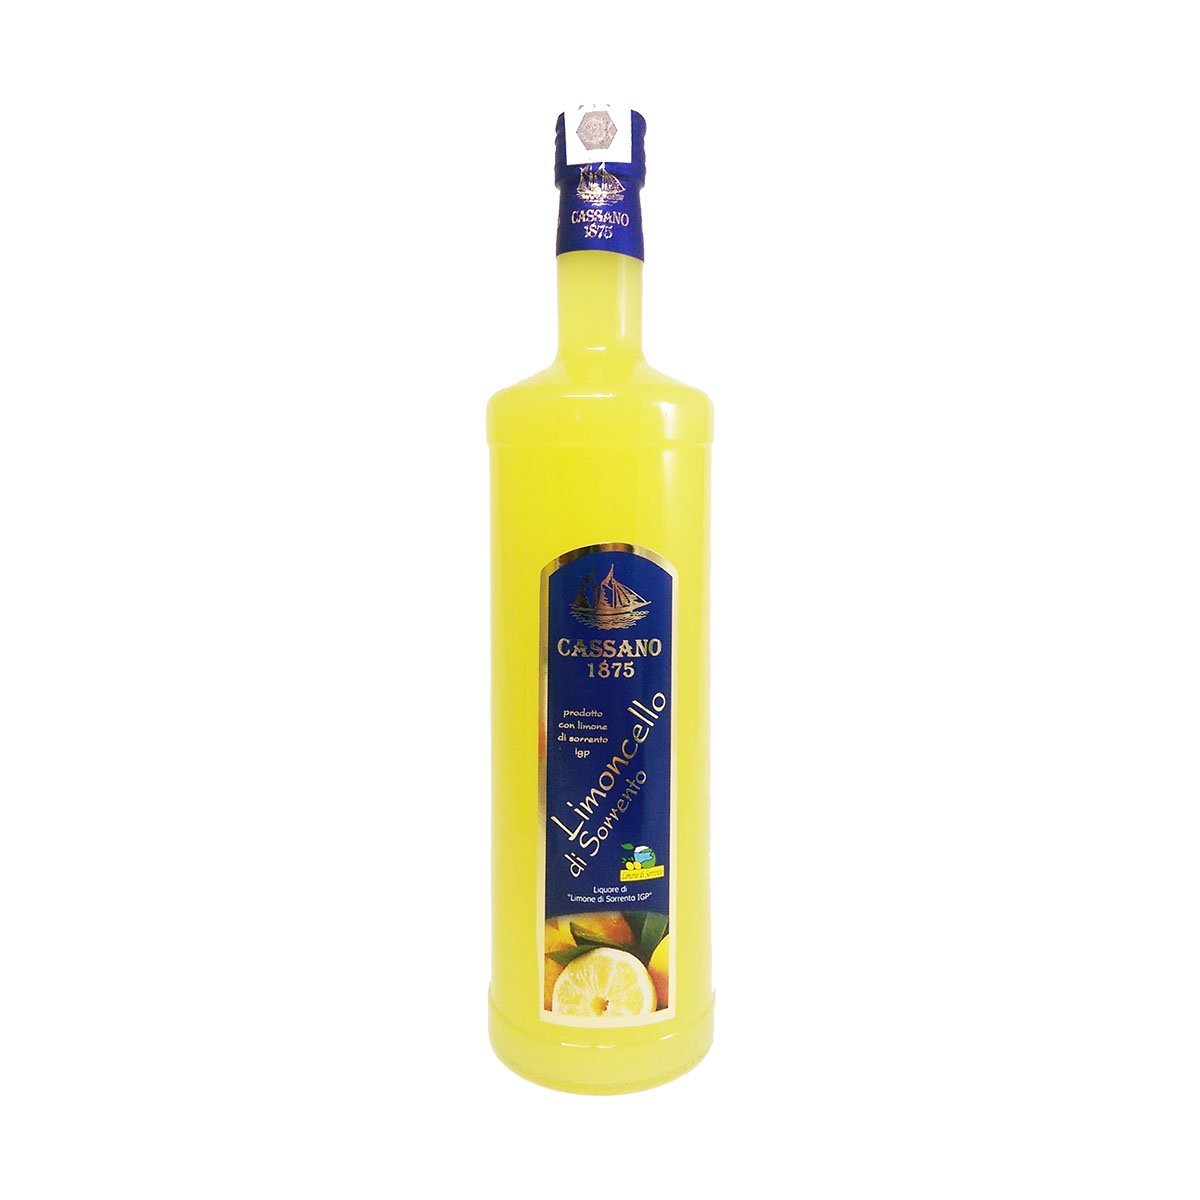 Sorrento of Party IGP 3x Limoncello – Offer Lemon PepeGusto 1000ml Autumn